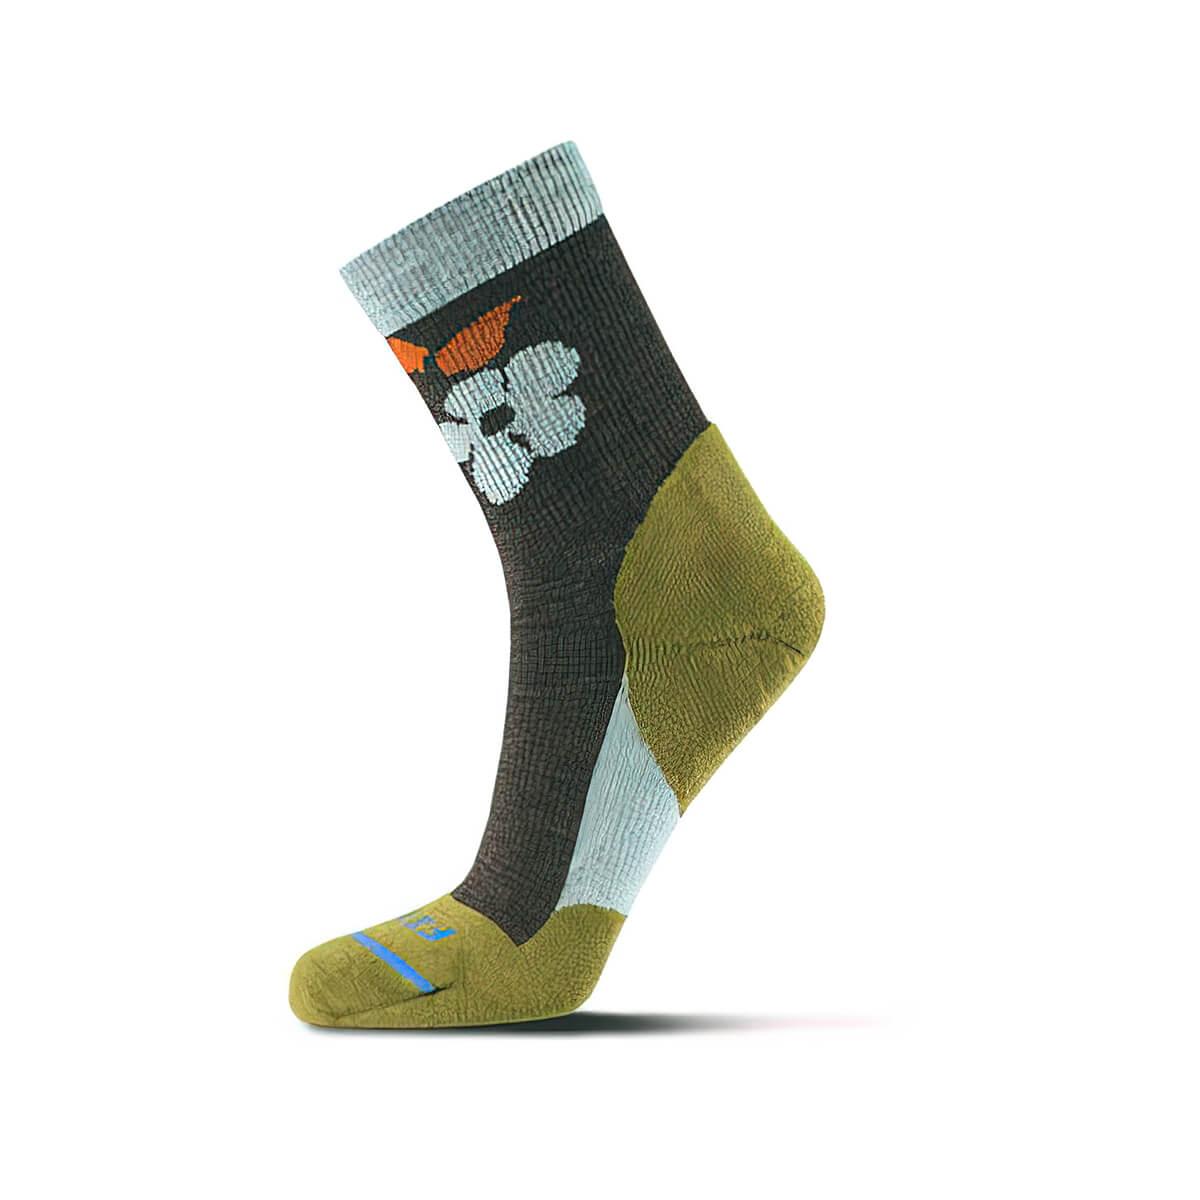  Light Hiker Mini Crew Socks - Floral